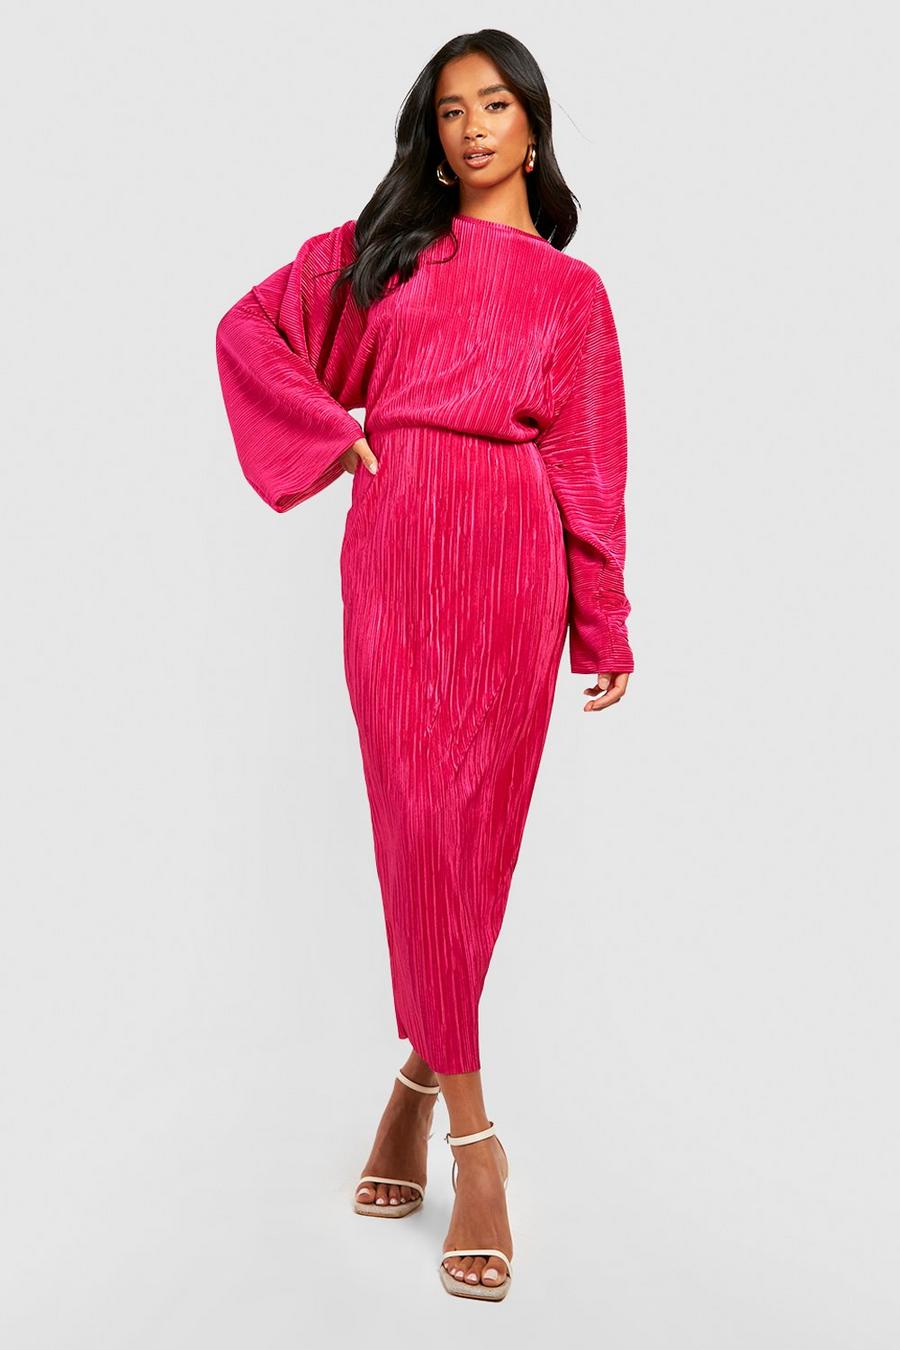 Petite - Robe mi-longue plissée à manches chauve-souris, Hot pink